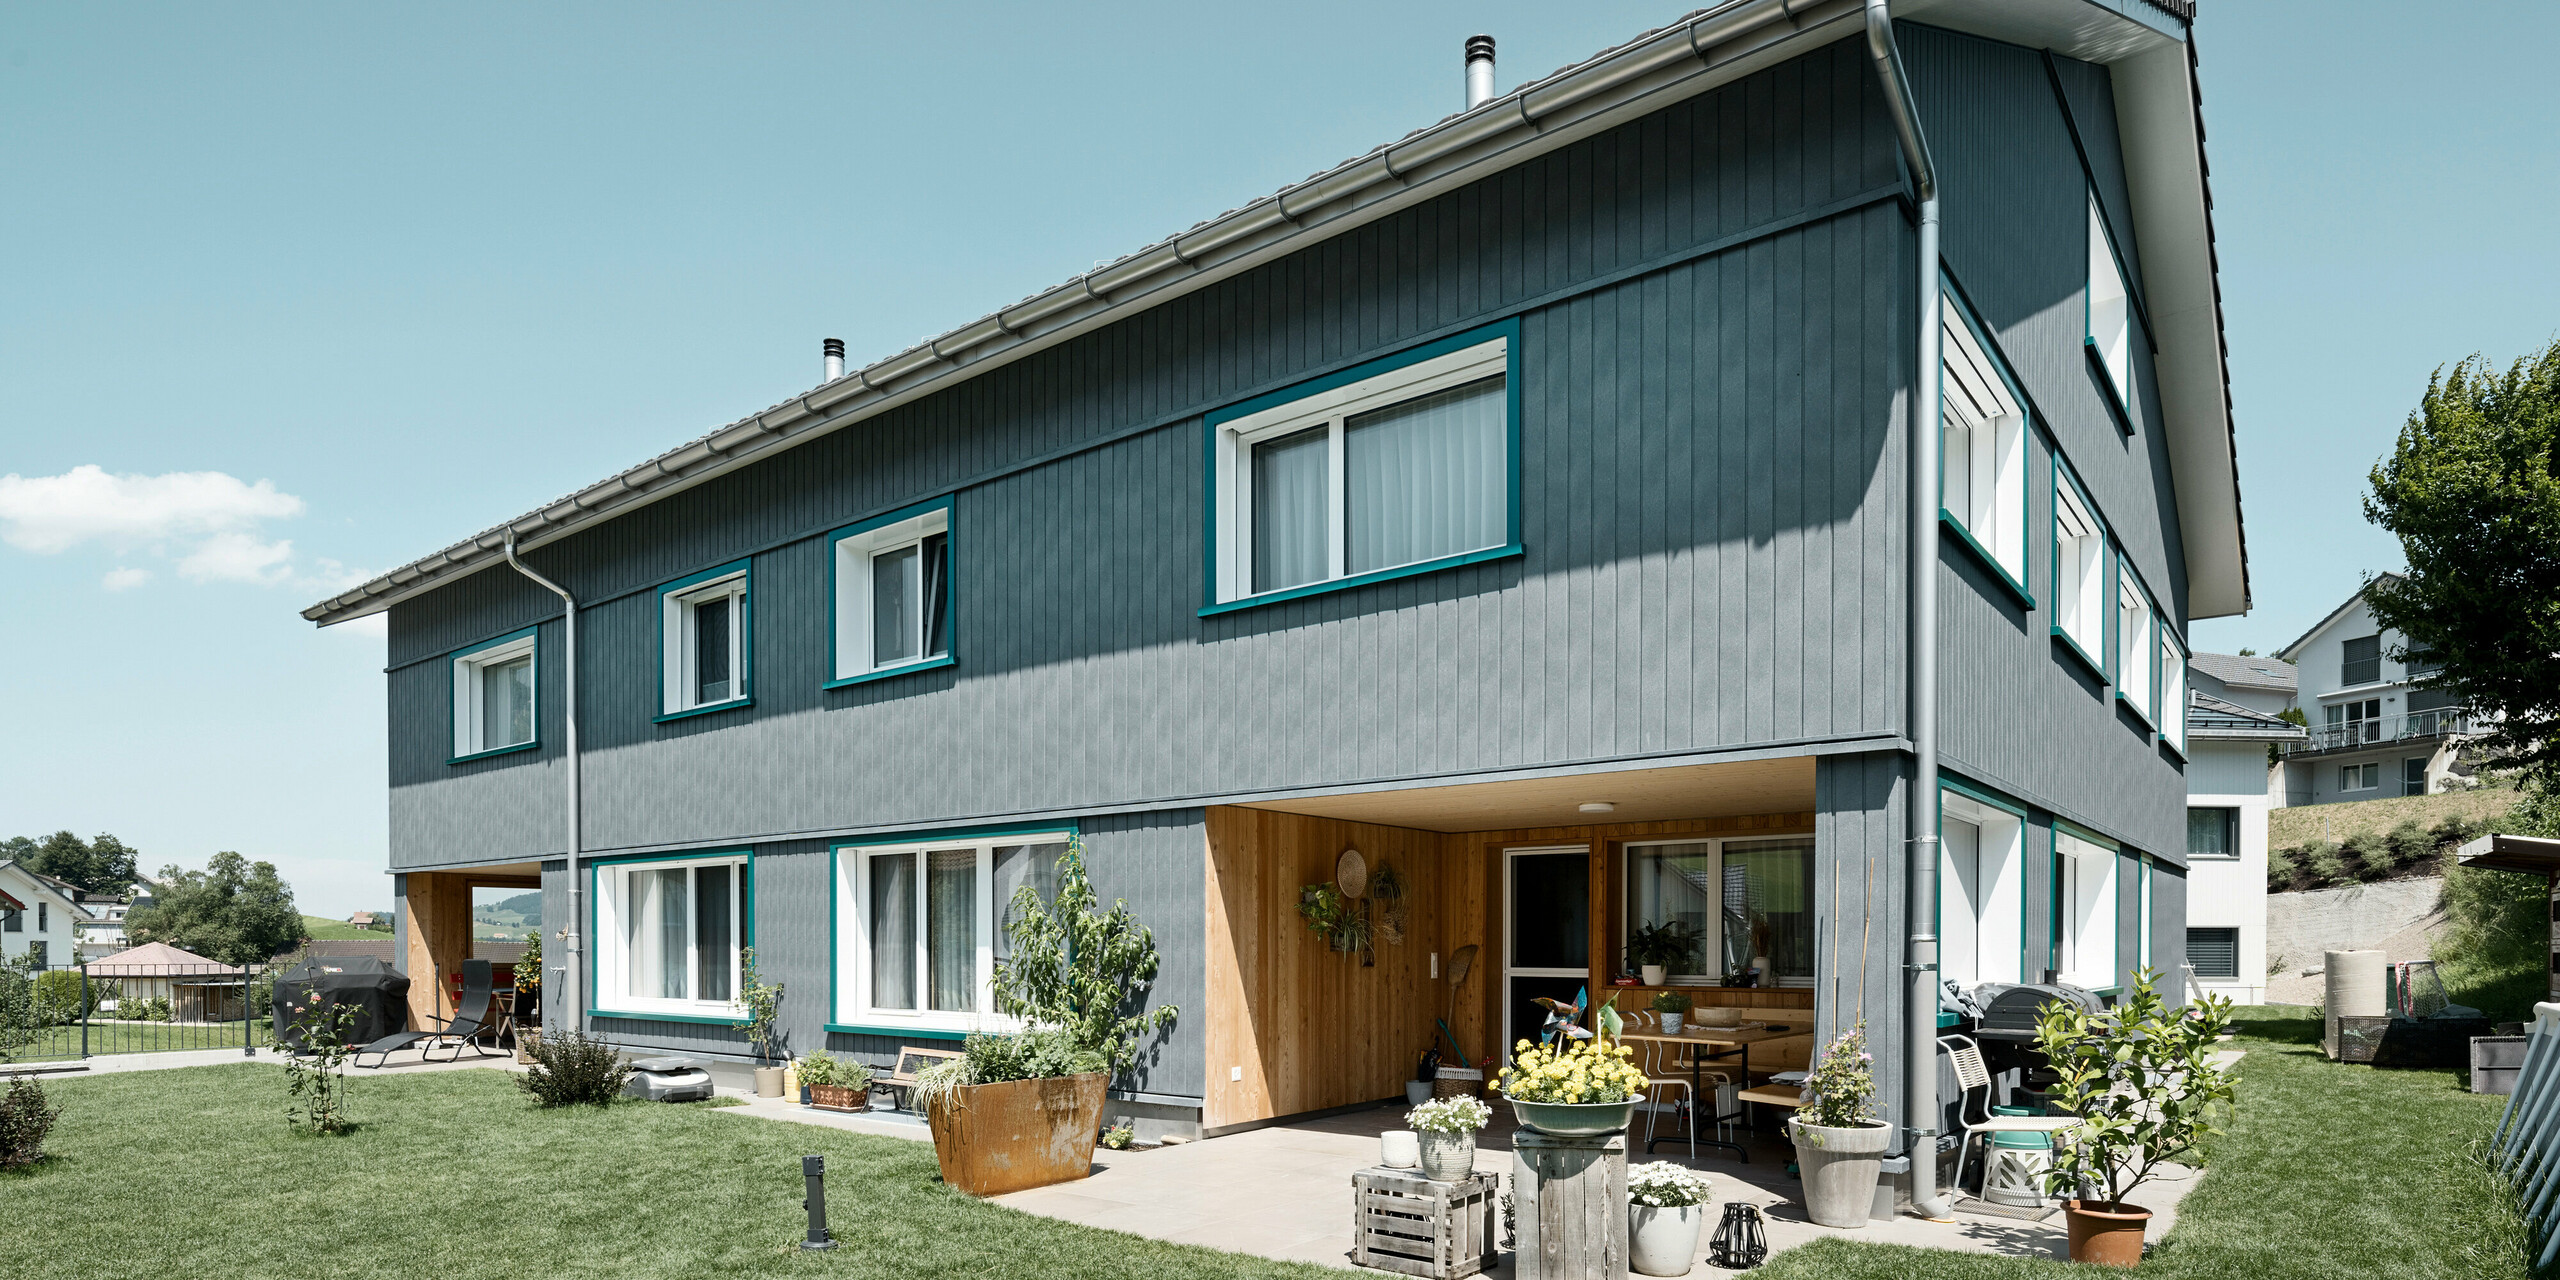 Gemütliches Mehrfamilienhaus in Weissbad, Schweiz, charakterisiert durch seine PREFA Siding Fassade in P.10 Steingrau, die sowohl Ästhetik als auch Langlebigkeit verspricht. Die vertikalen Linien der Sidings fügen sich nahtlos in die ländliche Umgebung ein und die lebhaften türkisen Fensterrahmen verleihen dem Gebäude eine einladende Note. Dieses Haus illustriert, wie PREFA Aluminiumprodukte die Balance zwischen Tradition und modernem Wohnkomfort meistern.